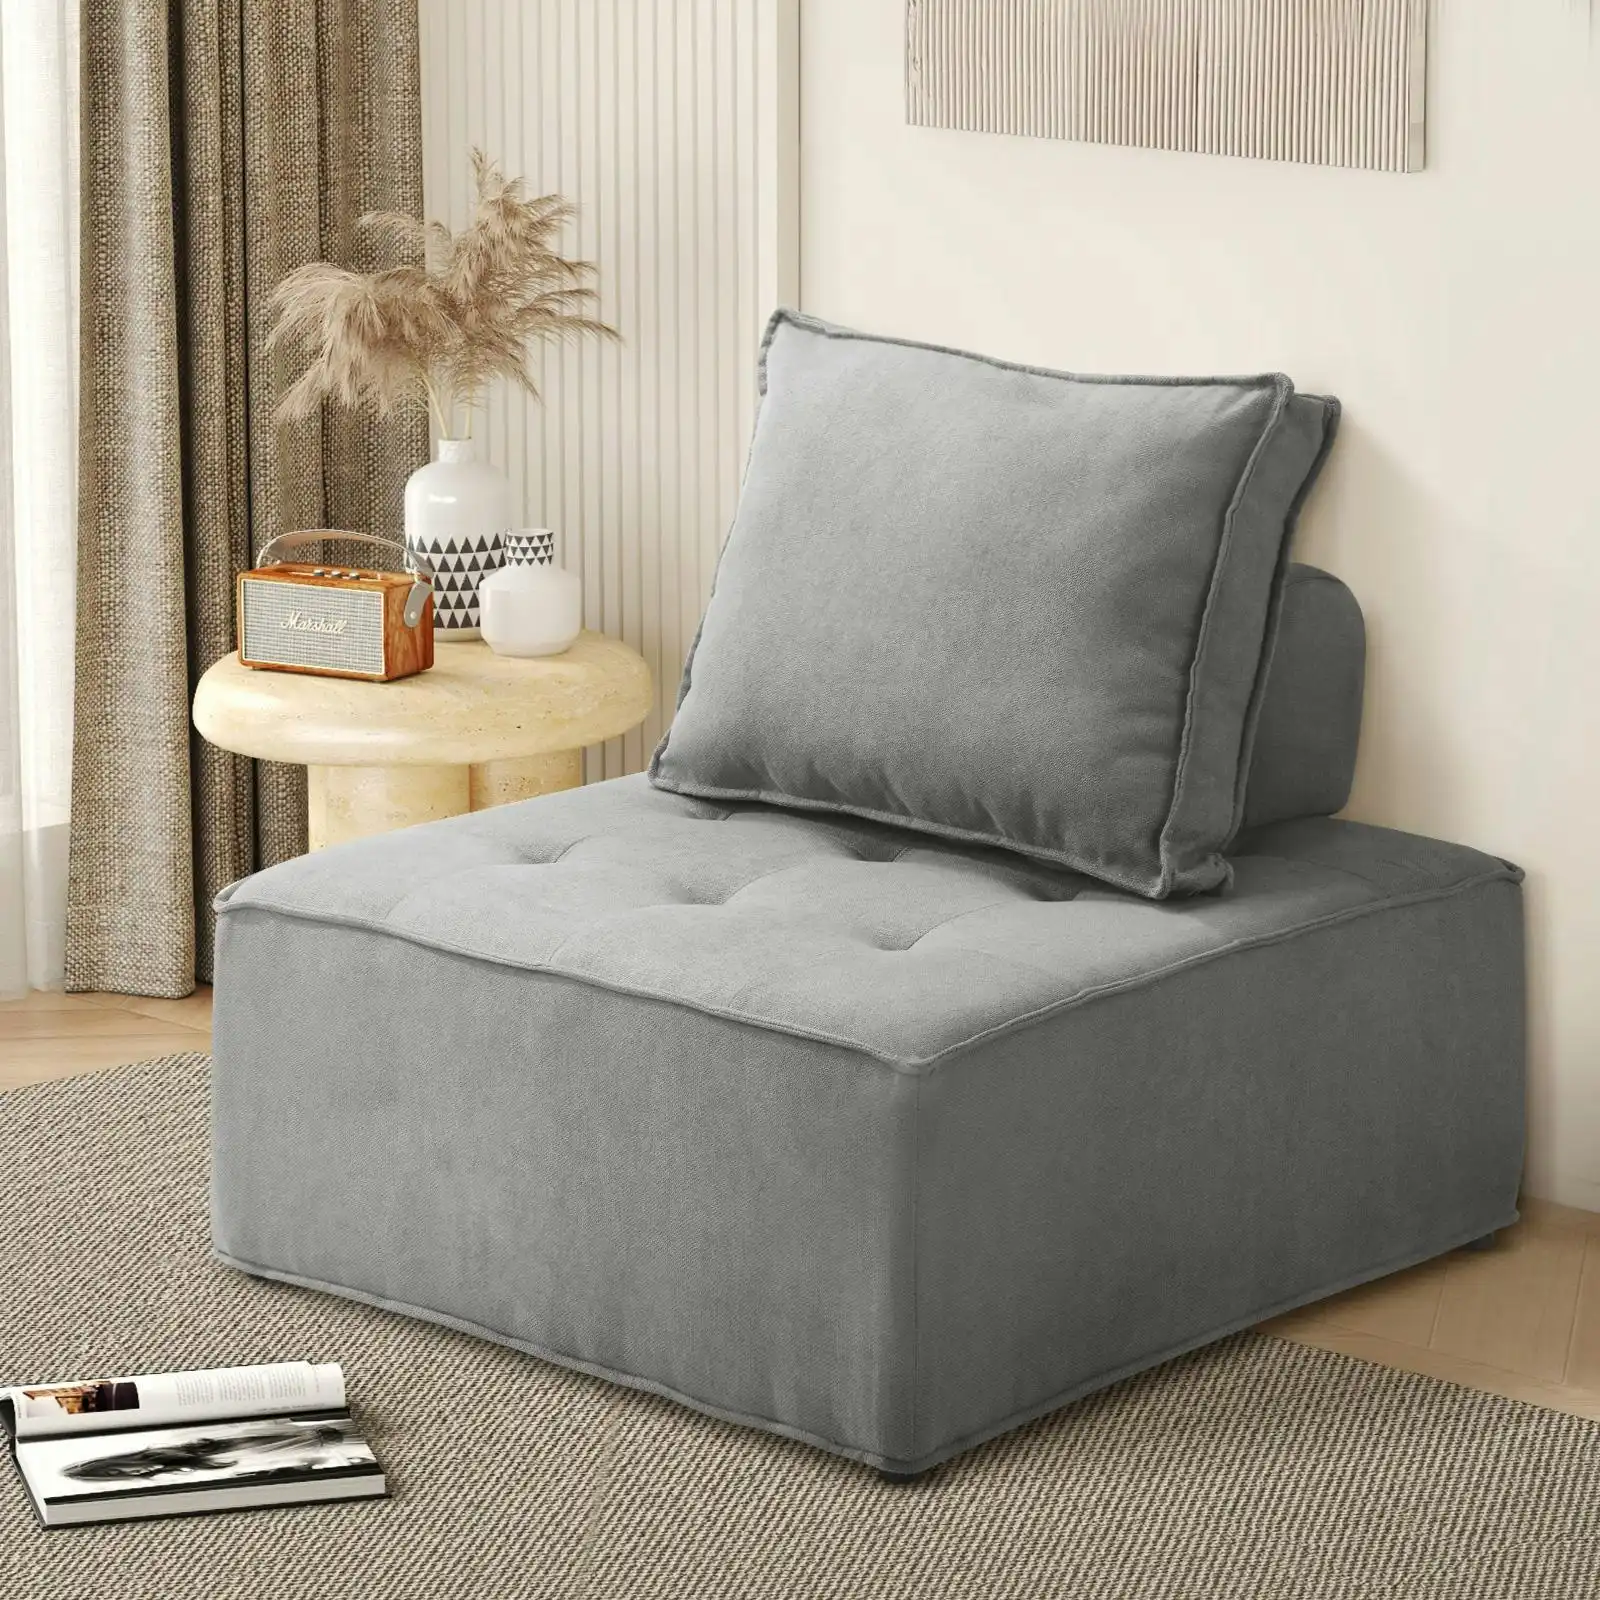 Oikiture 1PC Modular Sofa Lounge Chair Armless Adjustable Back Linen Grey